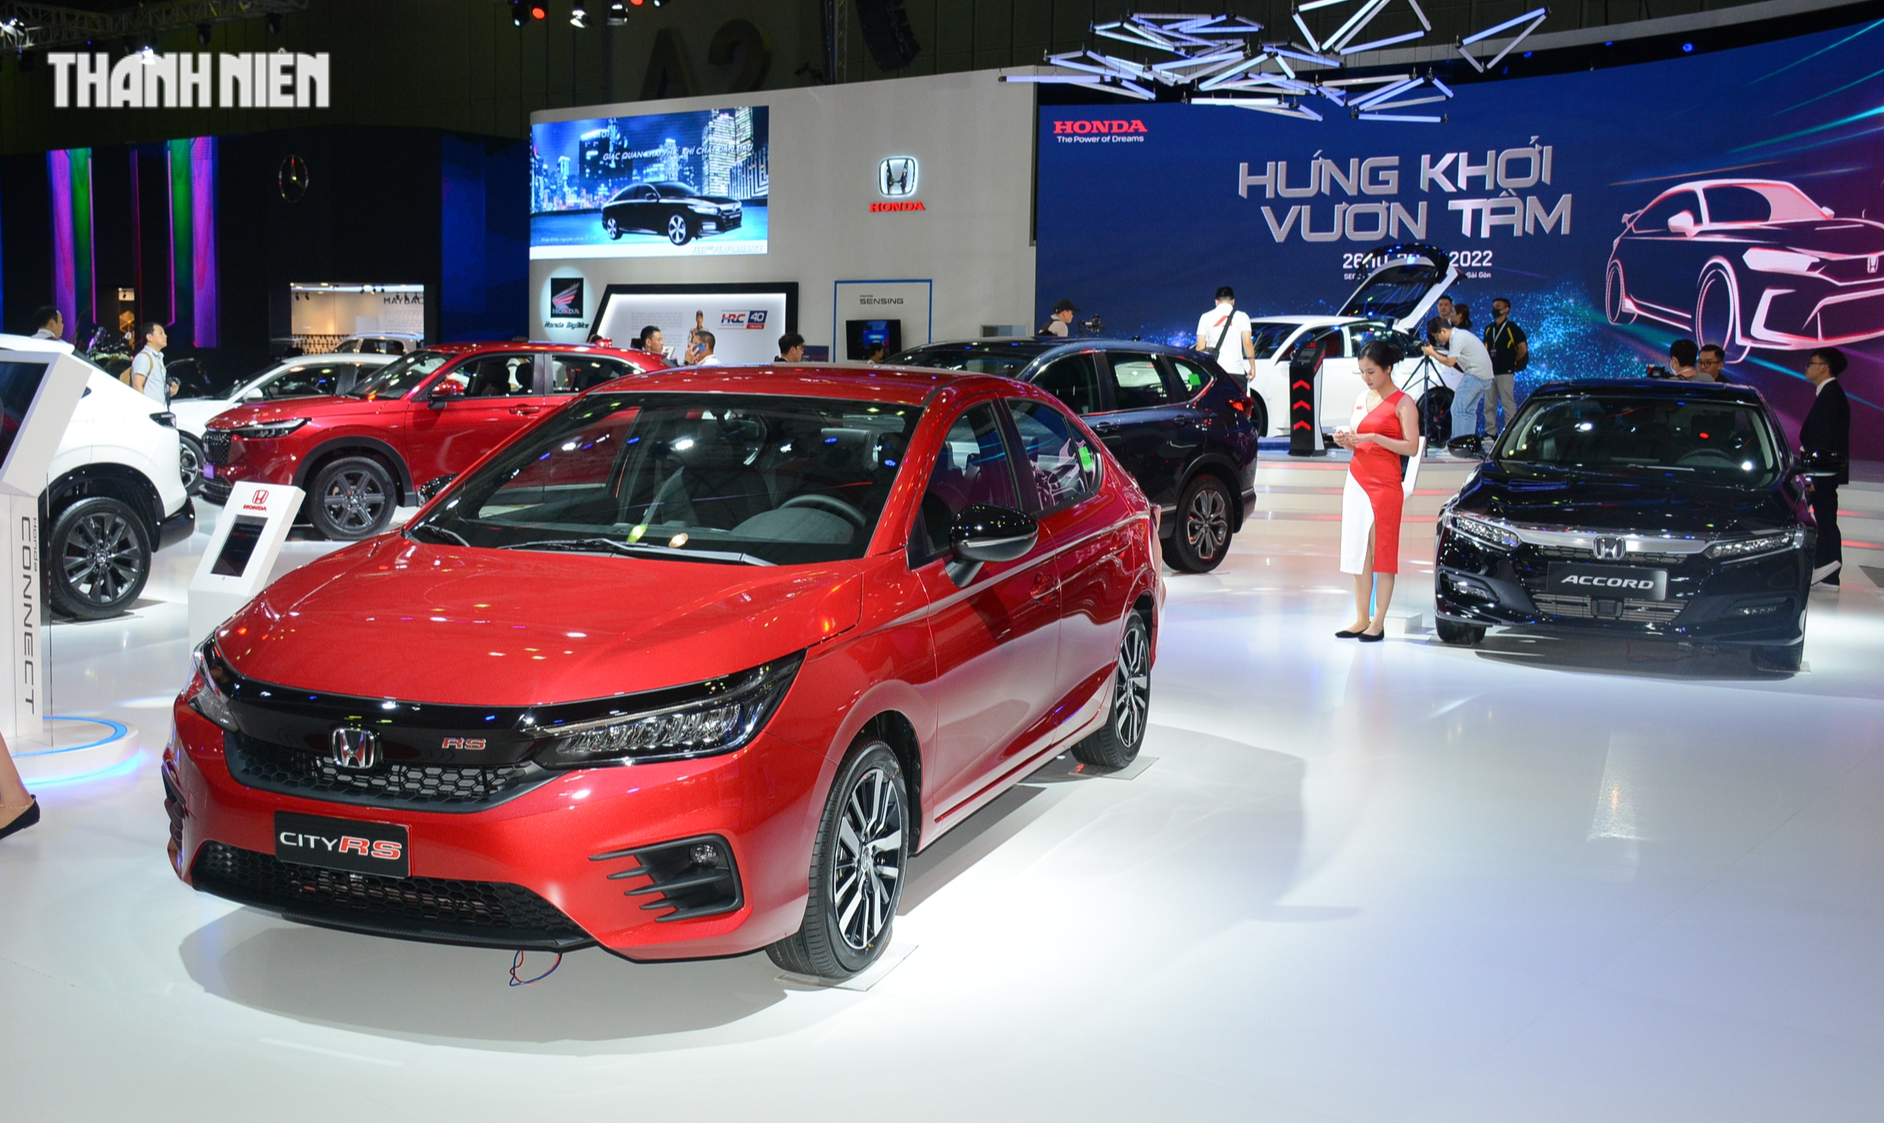 Doanh số nhiều hãng ô tô sụt giảm tại Việt Nam, chỉ VinFast, Honda tăng trưởng - Ảnh 3.